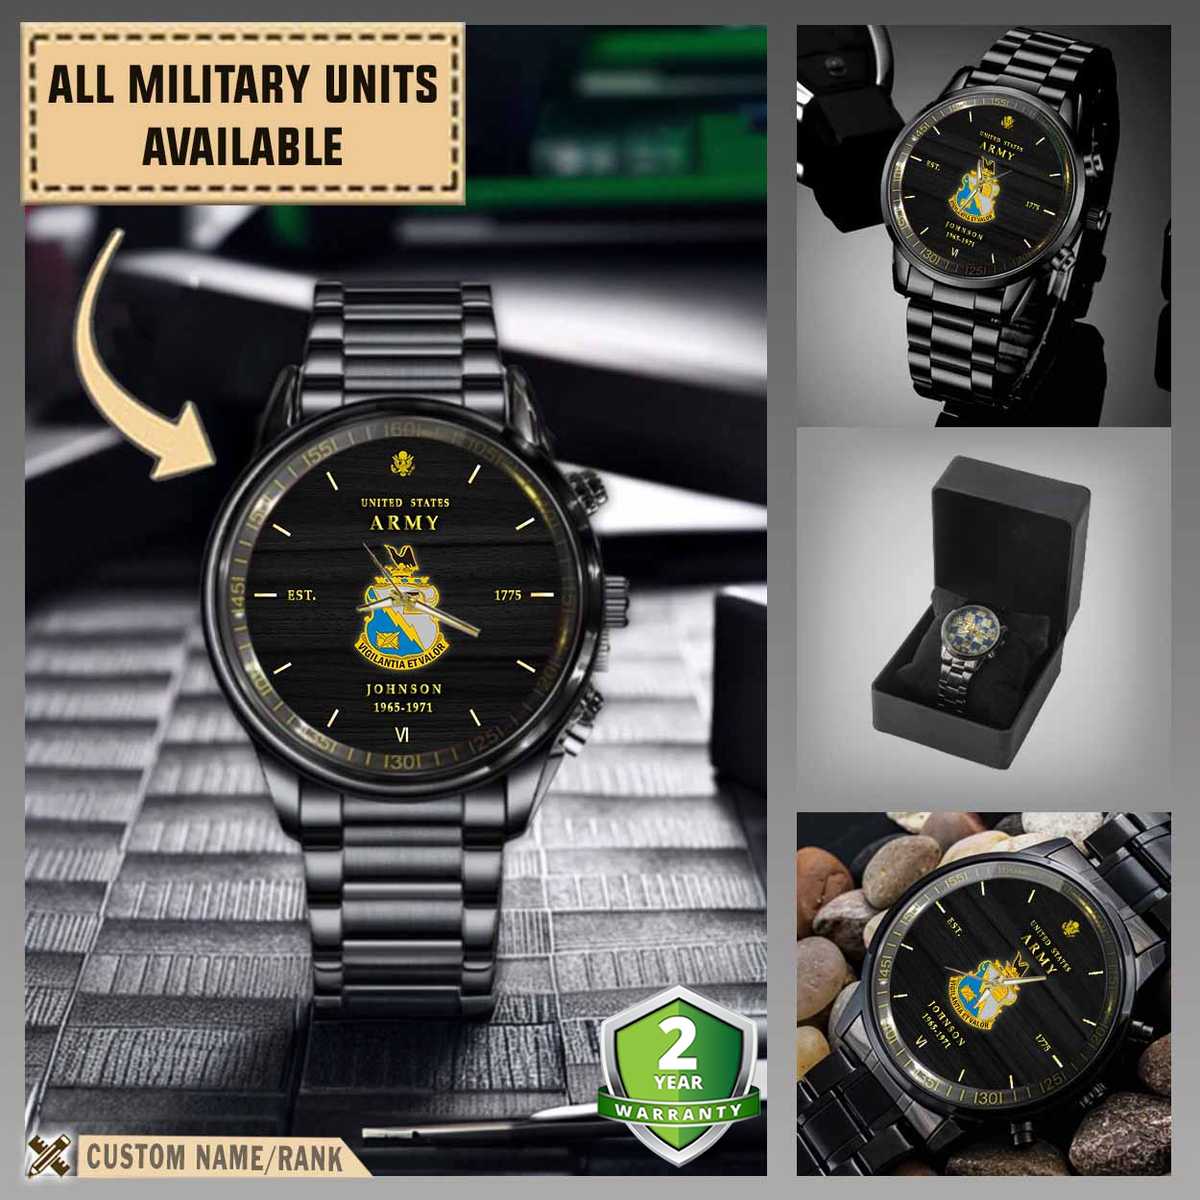 341st mi bn 341st military intelligence battalionmilitary black wrist watch 0krcl